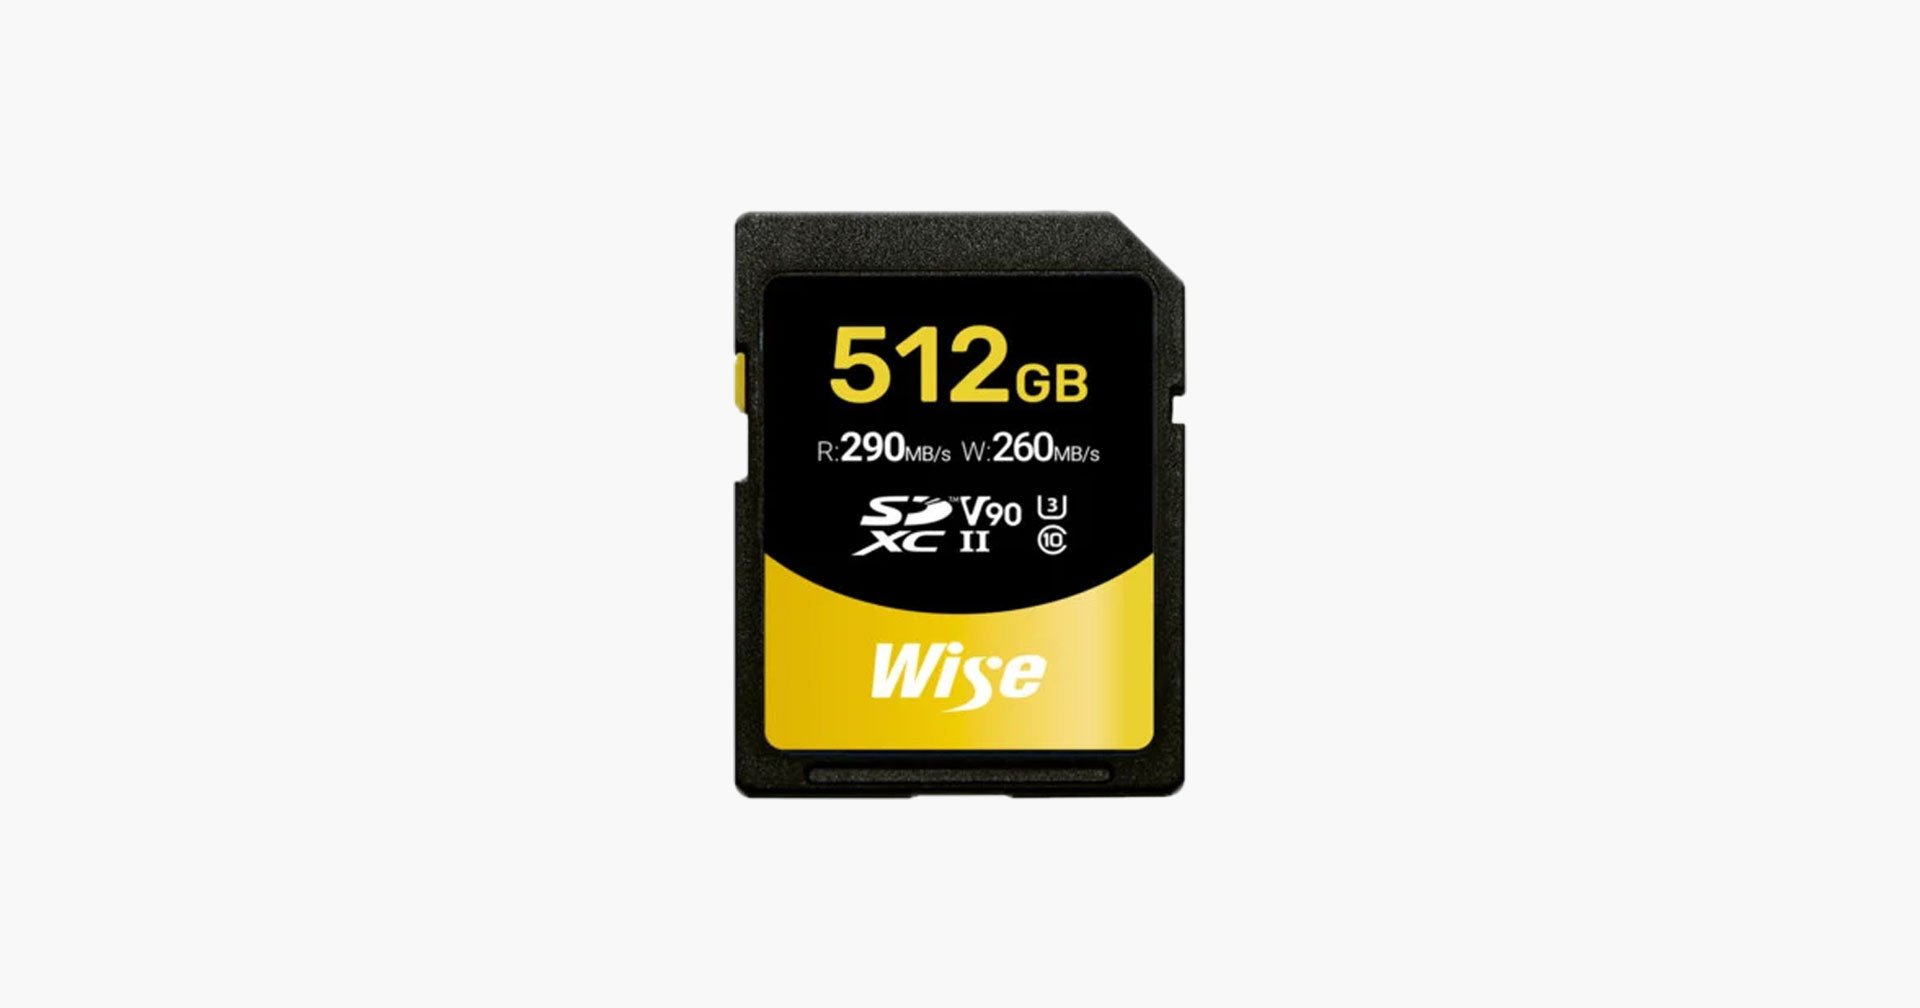 เปิดตัว Wise SD Card UHS-II 512GB ระดับ V90 ตัวแรกของโลก!